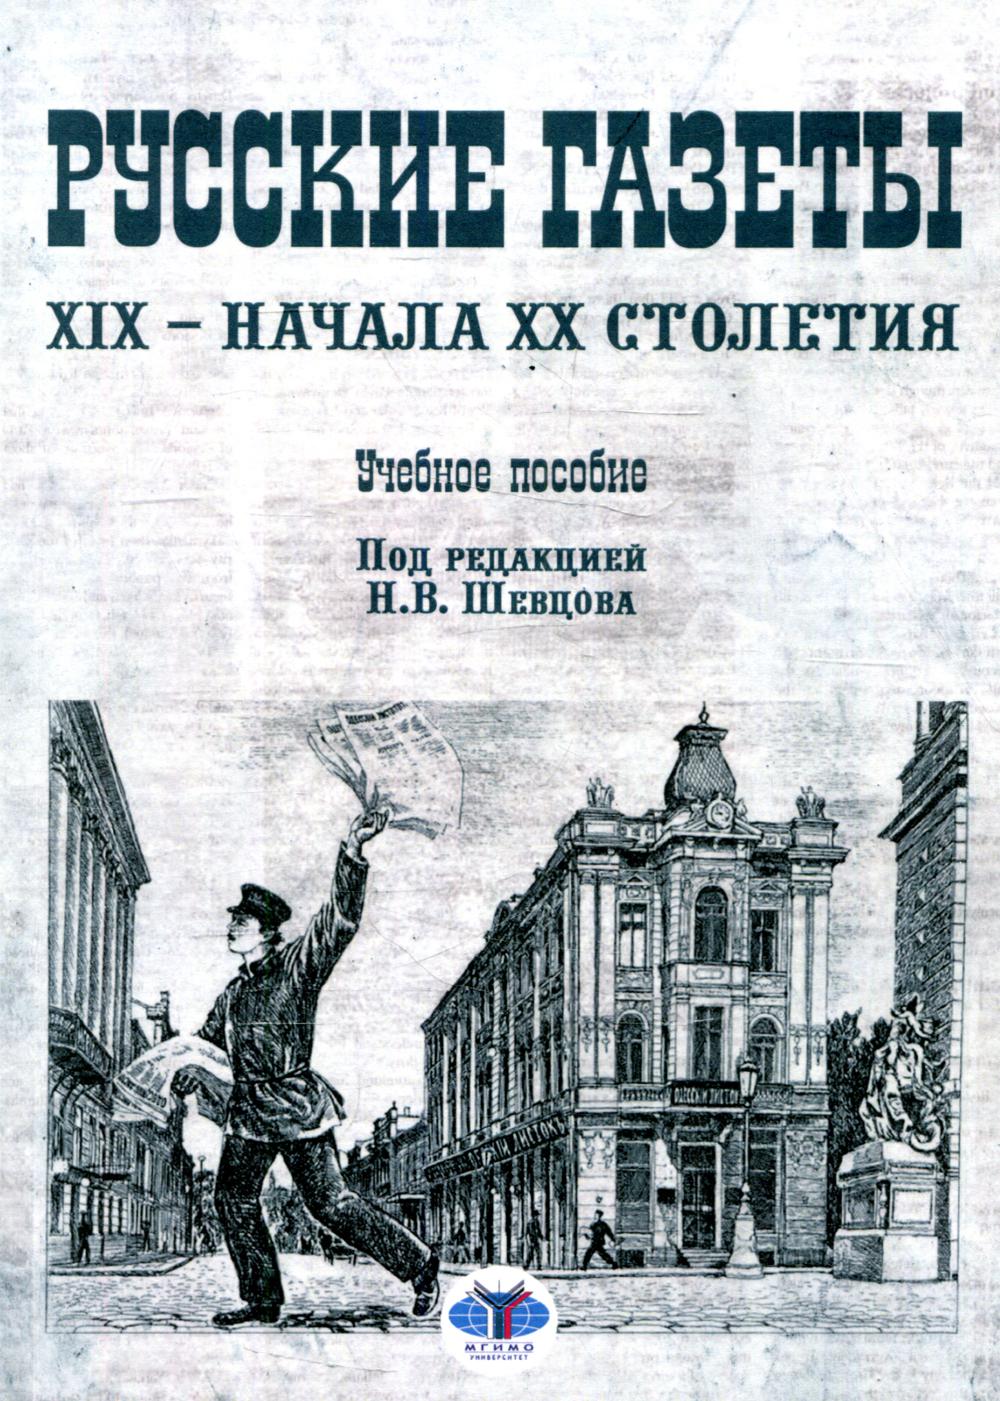 Книга Русские газеты XIX - начала XX столетия